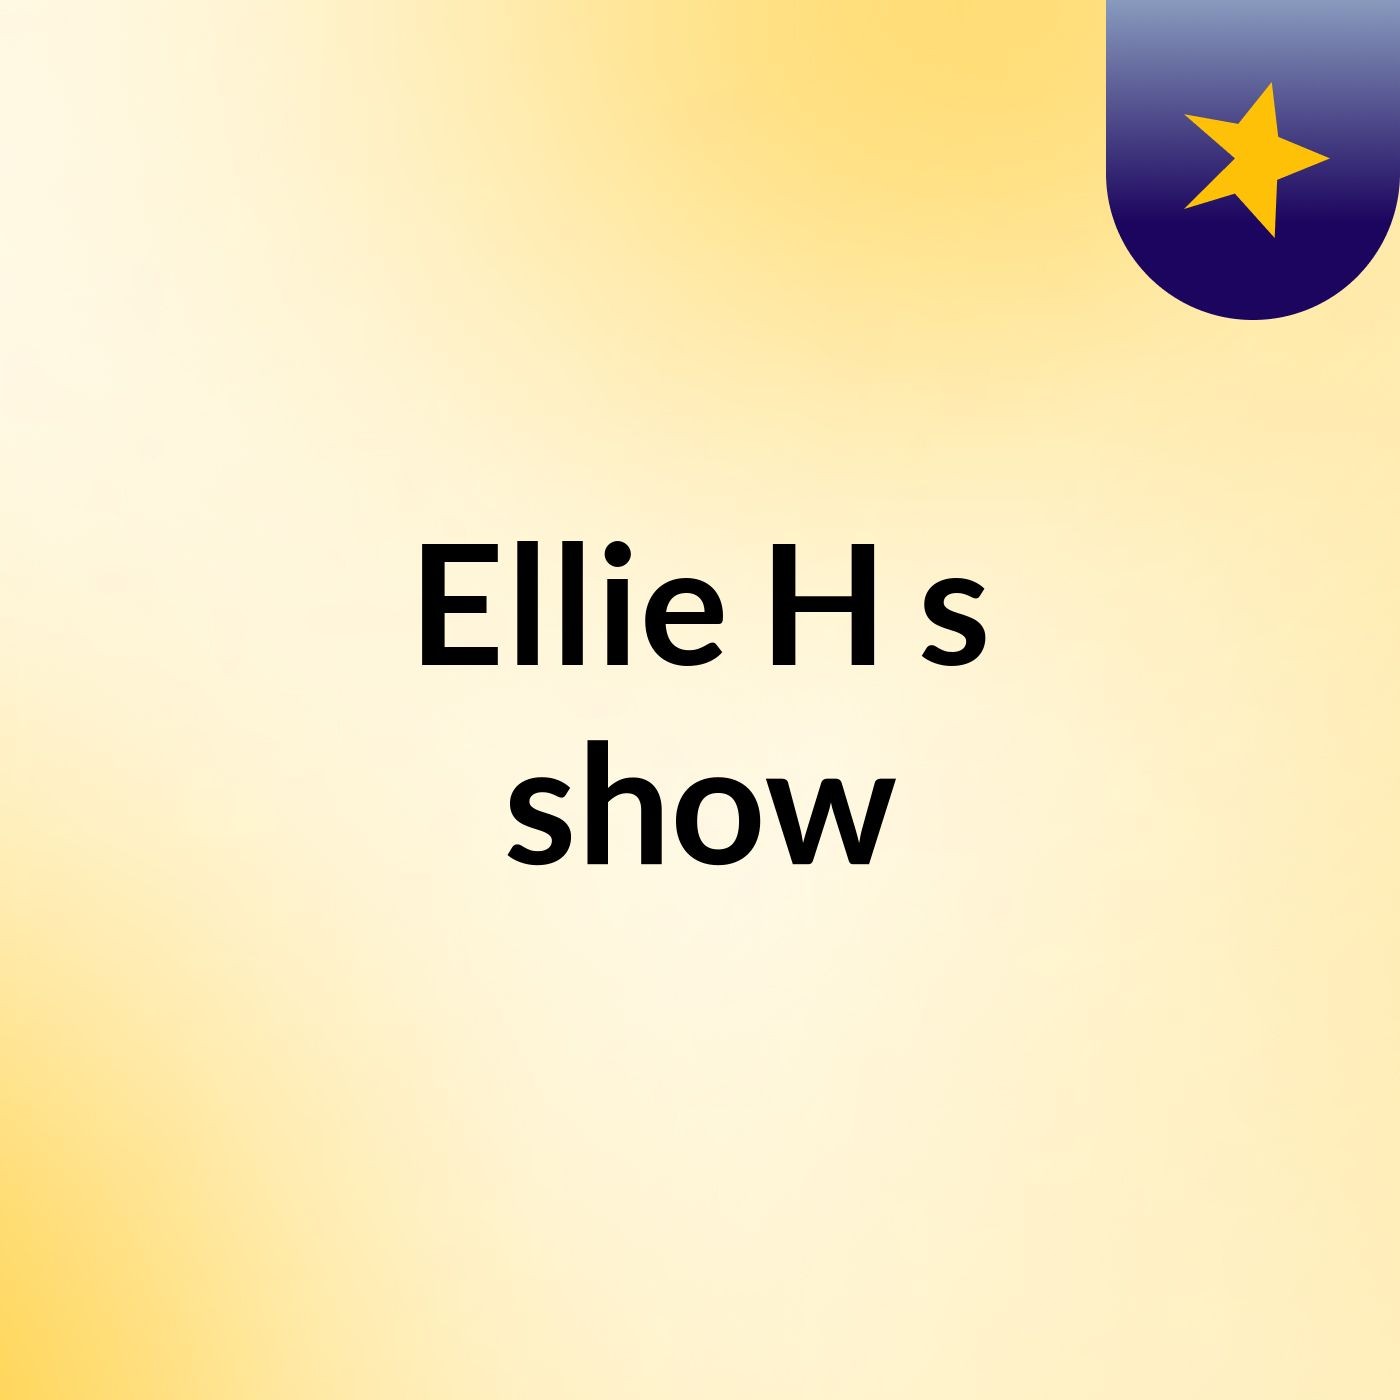 Ellie H's show